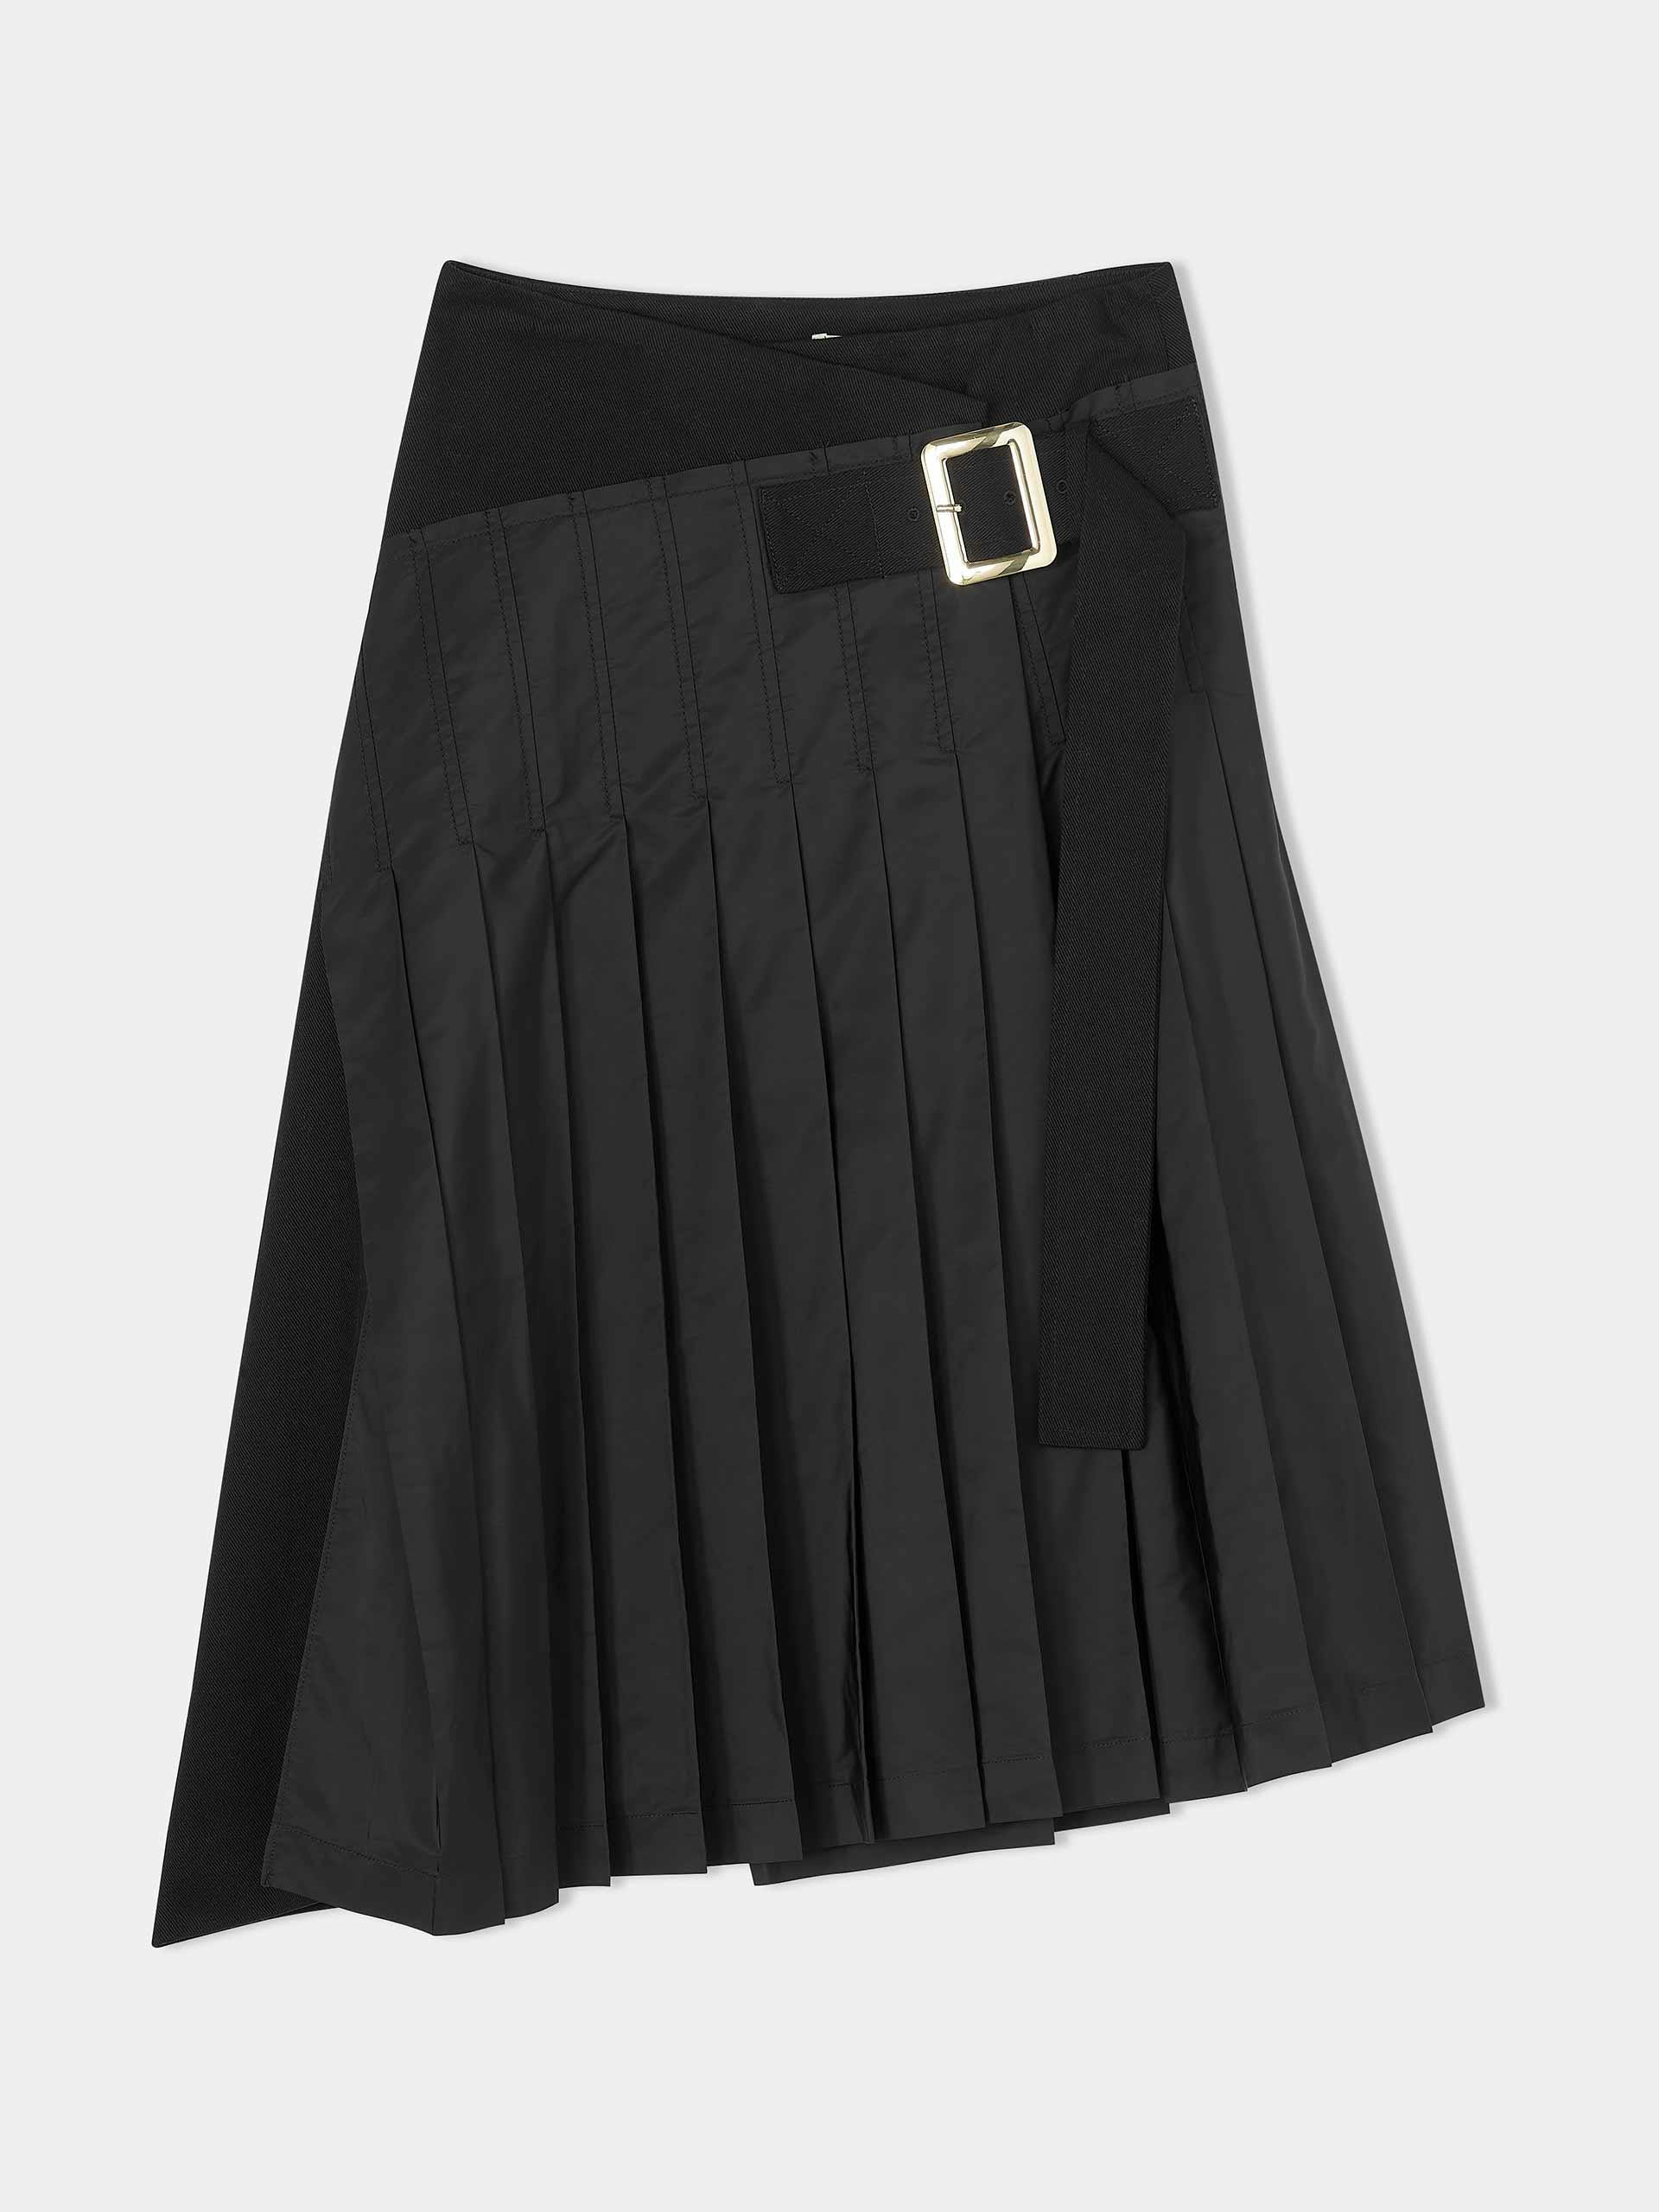 Black pleated kilt skirt